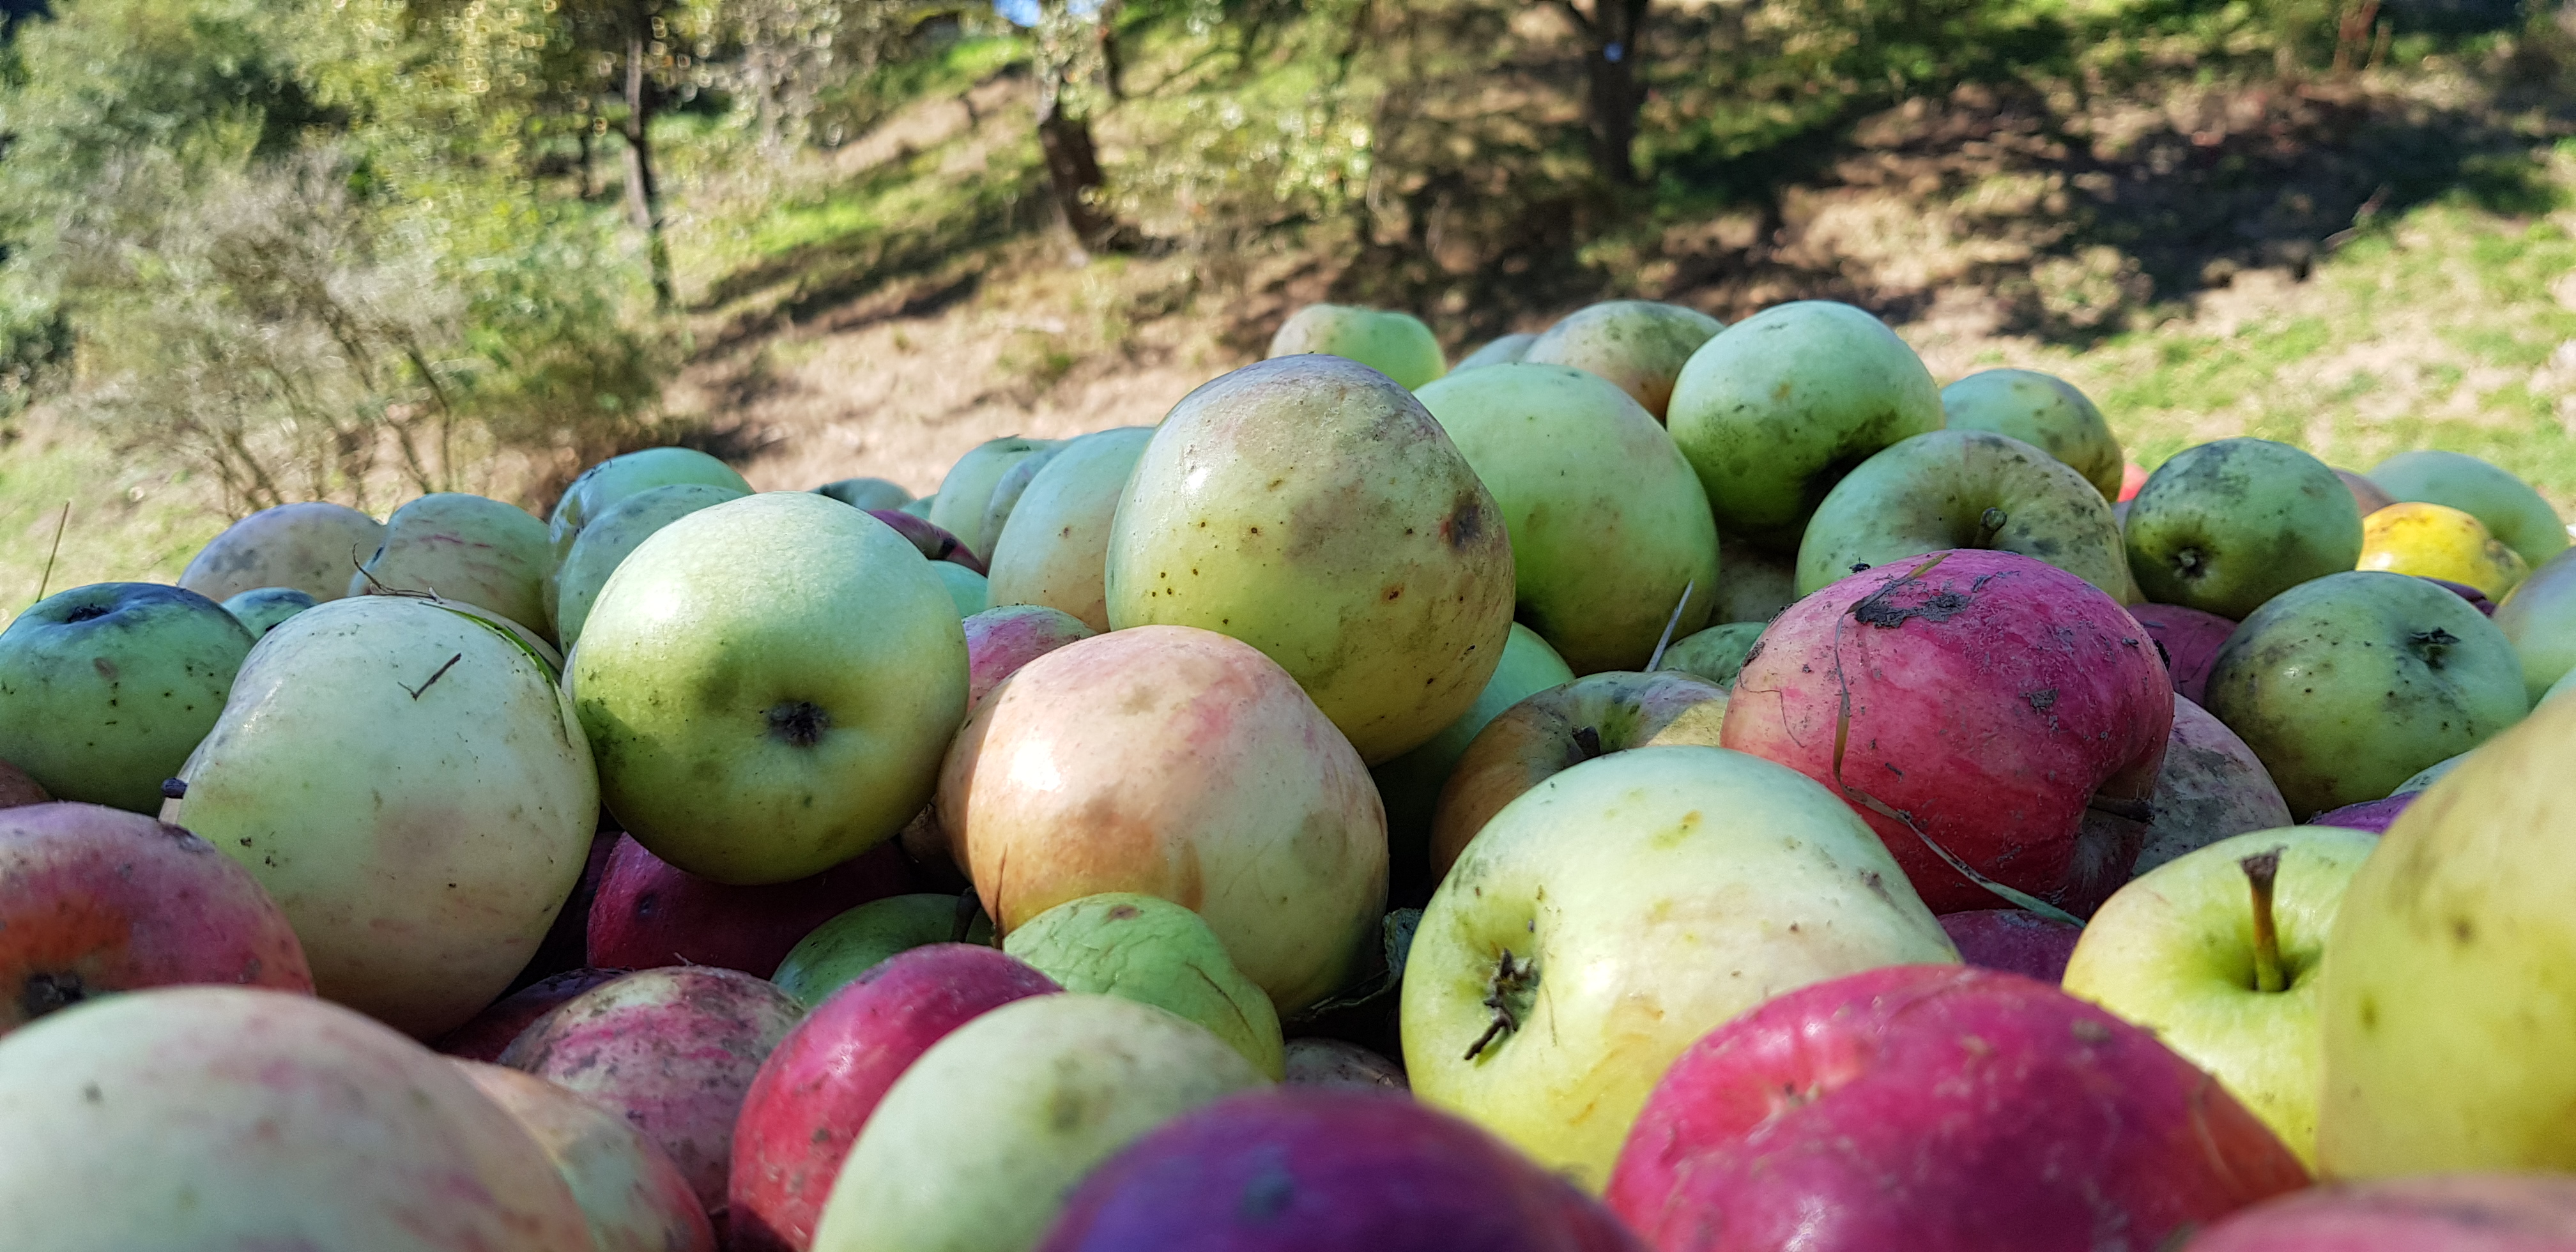 Sortenbestimmung von Äpfeln und Birnen - Öko-Markt 2019 auf dem Gelände des Klosters Roggenburg